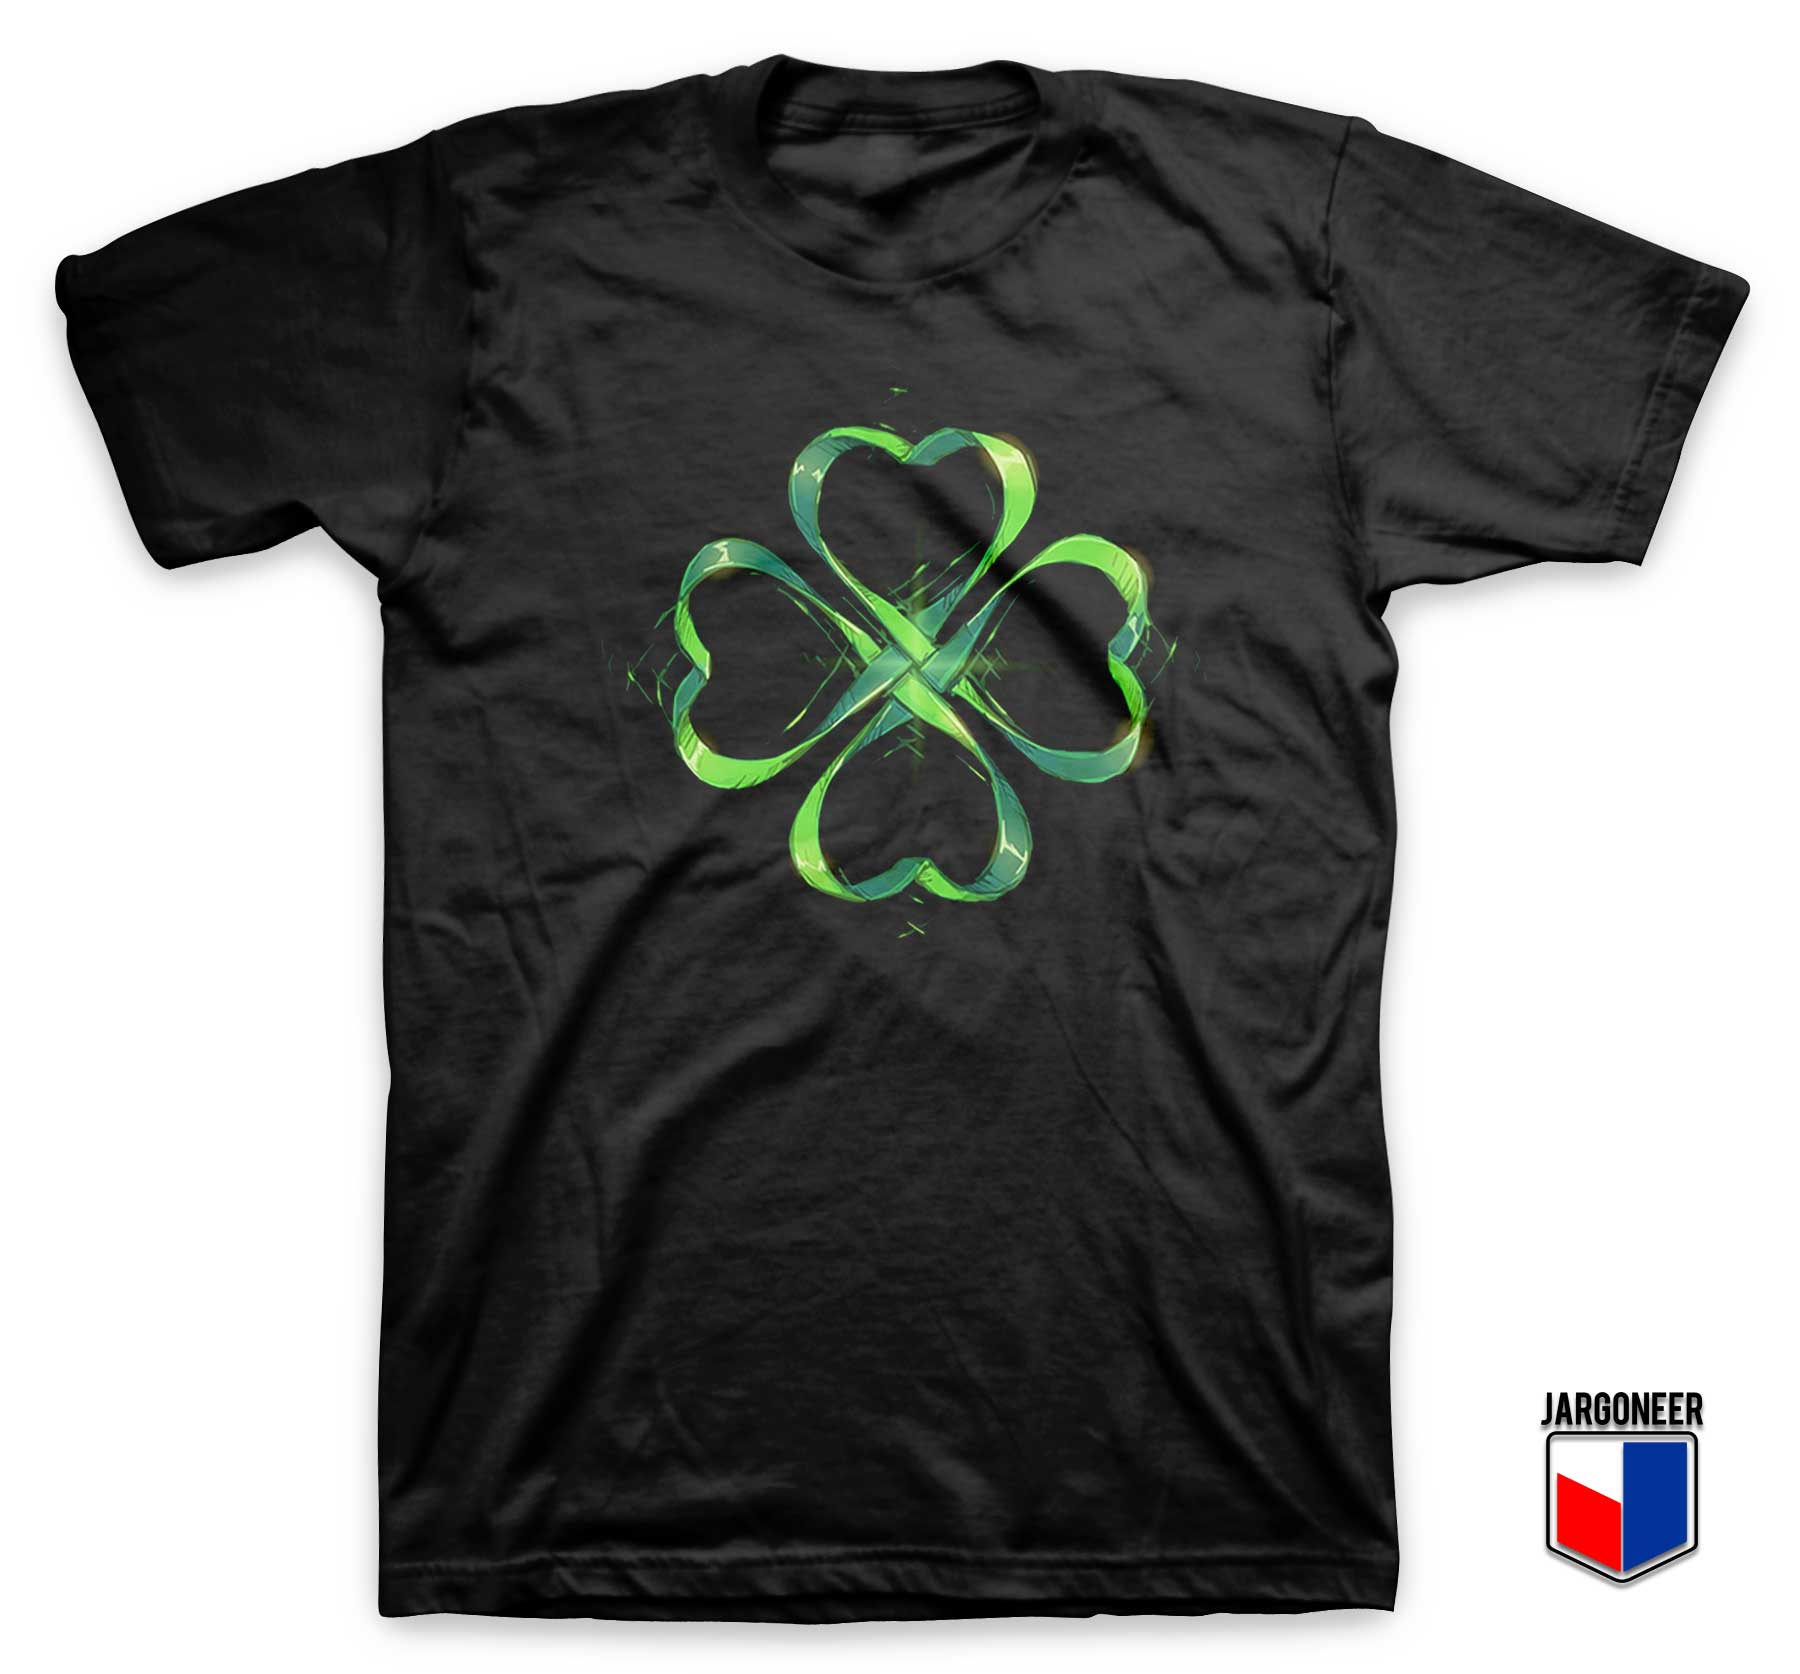 St. Patricks Day Vintage T Shirt - Shop Unique Graphic Cool Shirt Designs